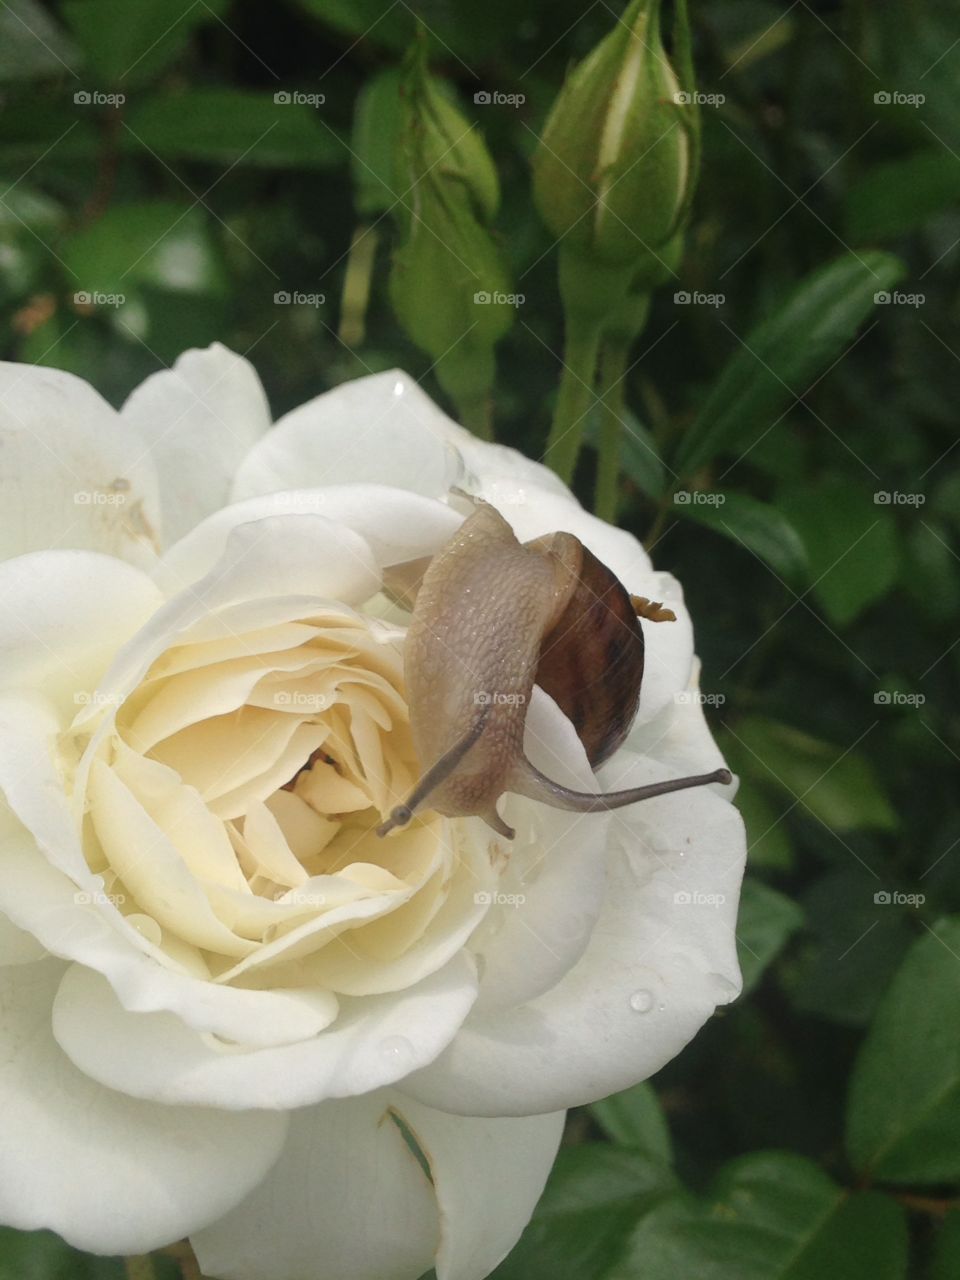 Snail on rose 